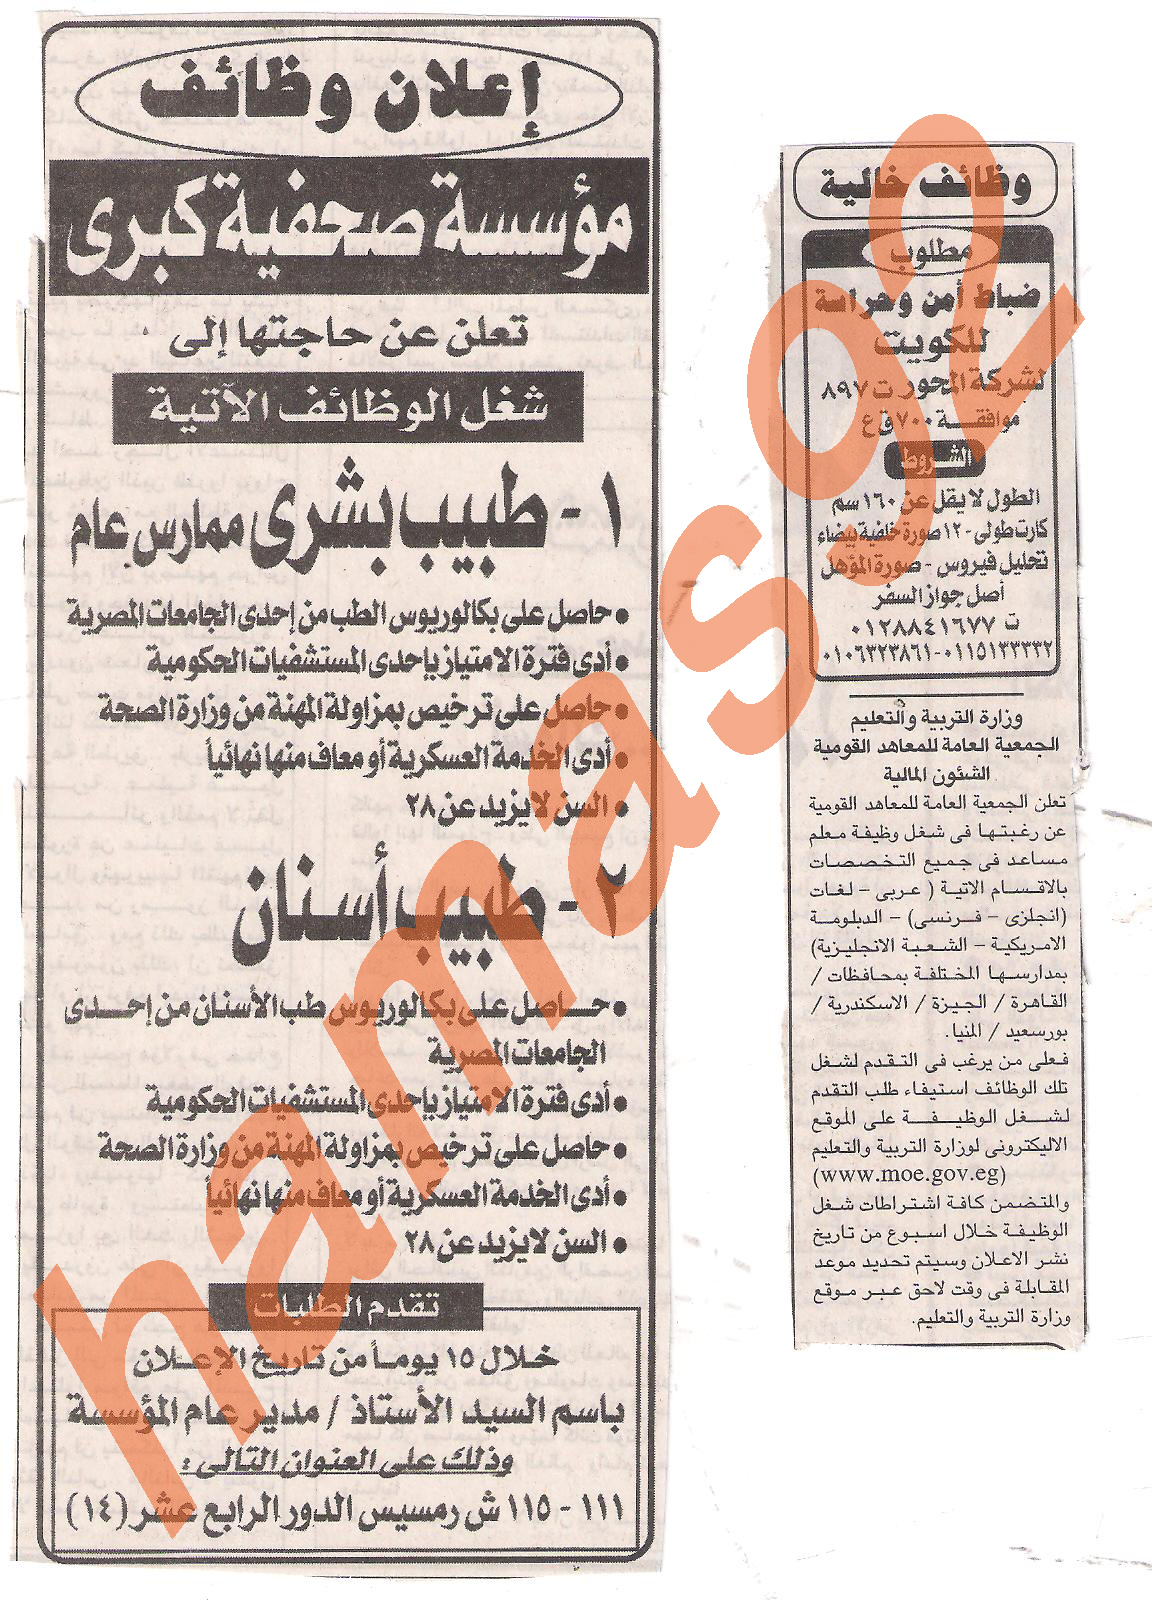 وظائف خالية من جريدة الجمهورية الخميس 28 يوليو 2011 Picture